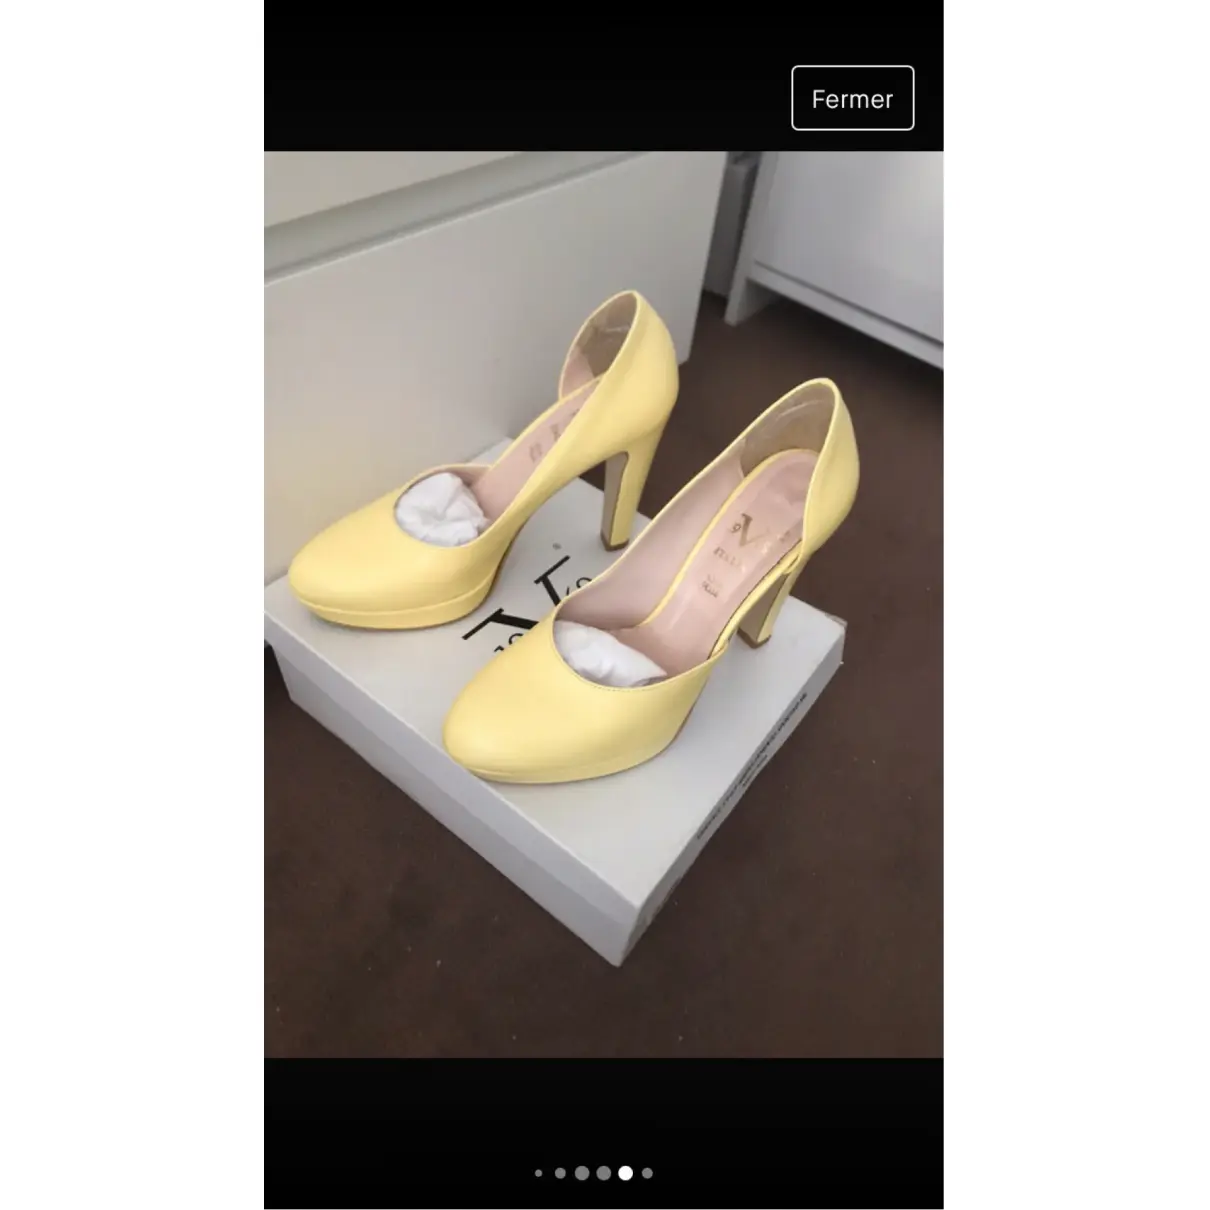 Buy Versace Leather heels online